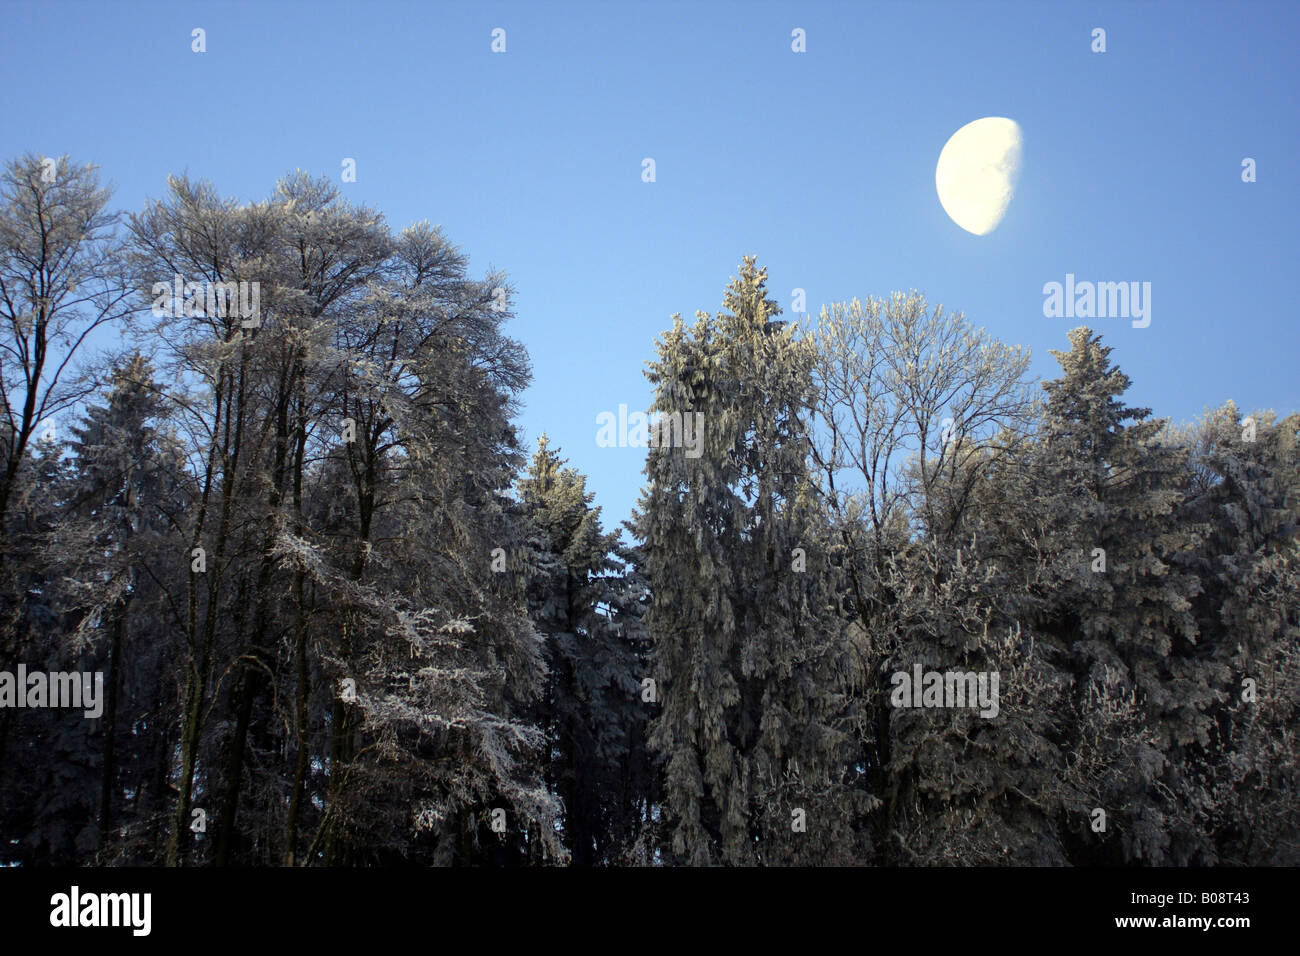 Foresta in inverno con trasformata per forte gradiente frost con luce lunare, Svizzera Foto Stock